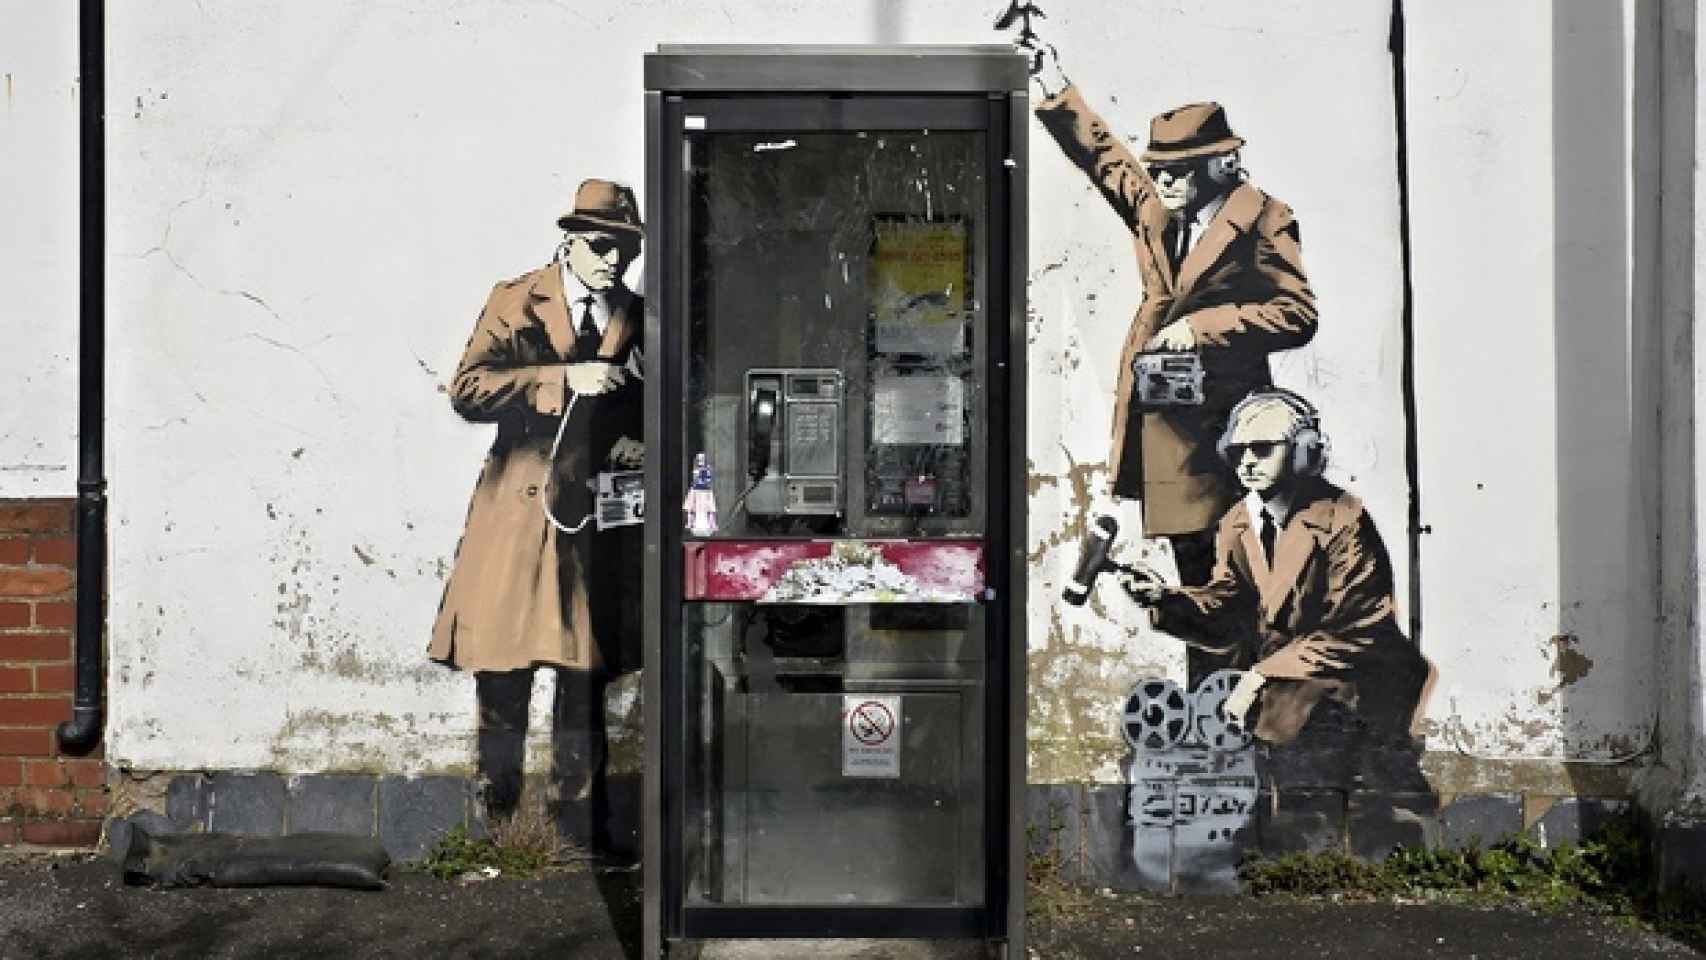 La obra de Banksy Spy Booth en la localidad de Cheltenham.